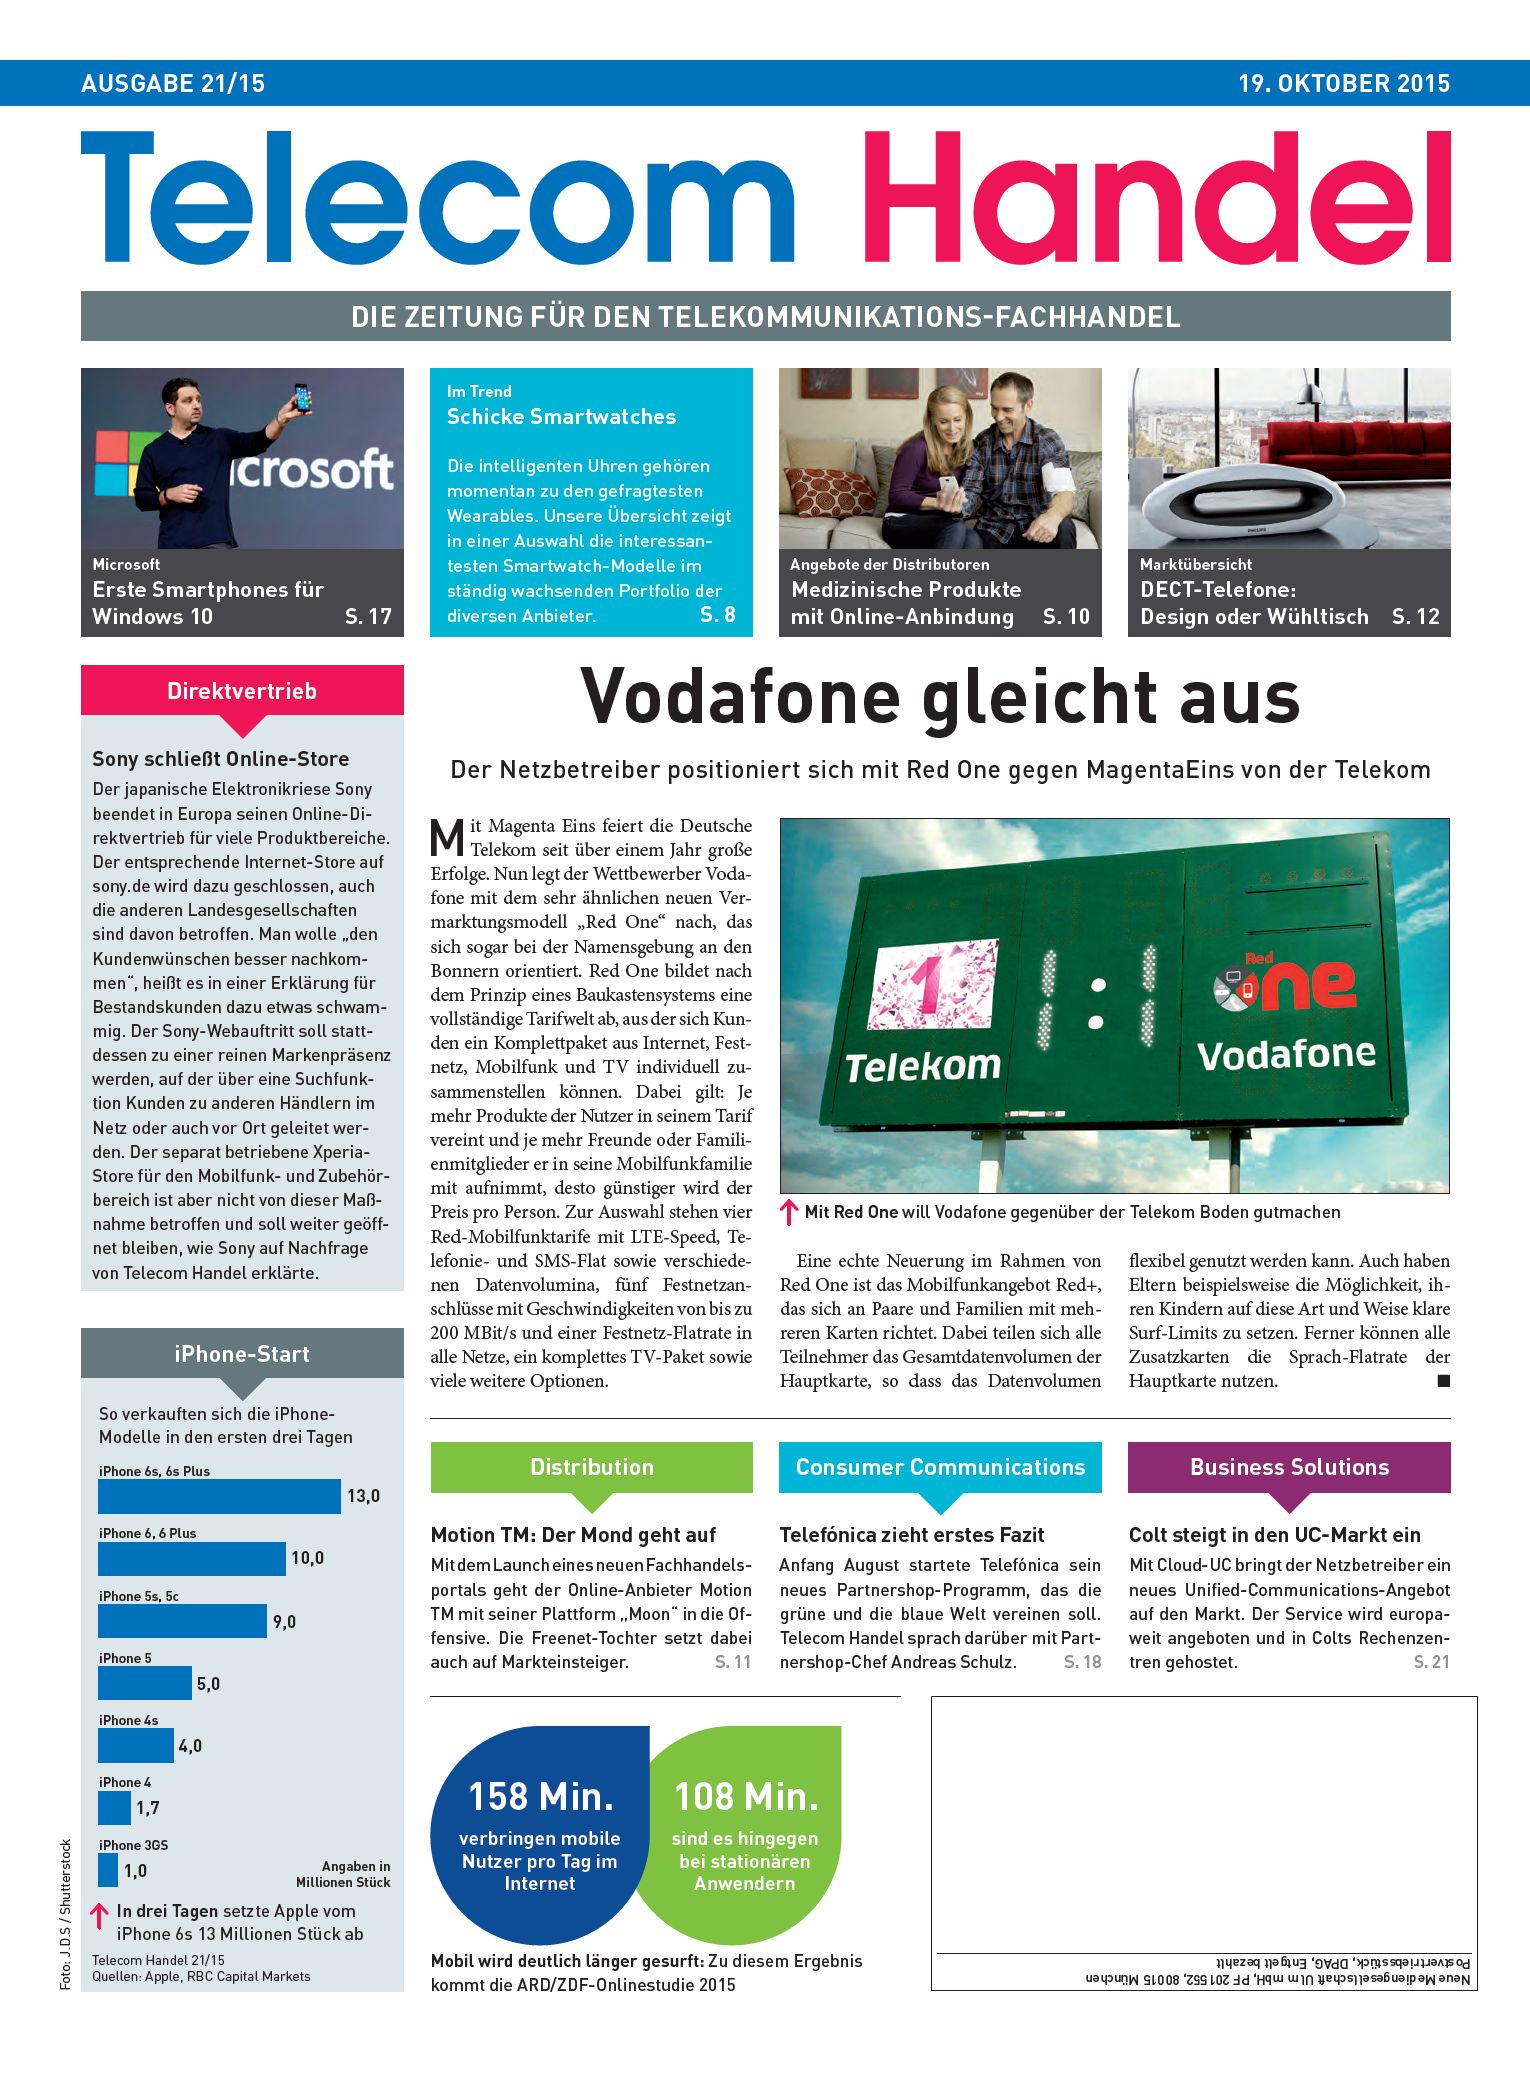 Telecom Handel Ausgabe 21/2015